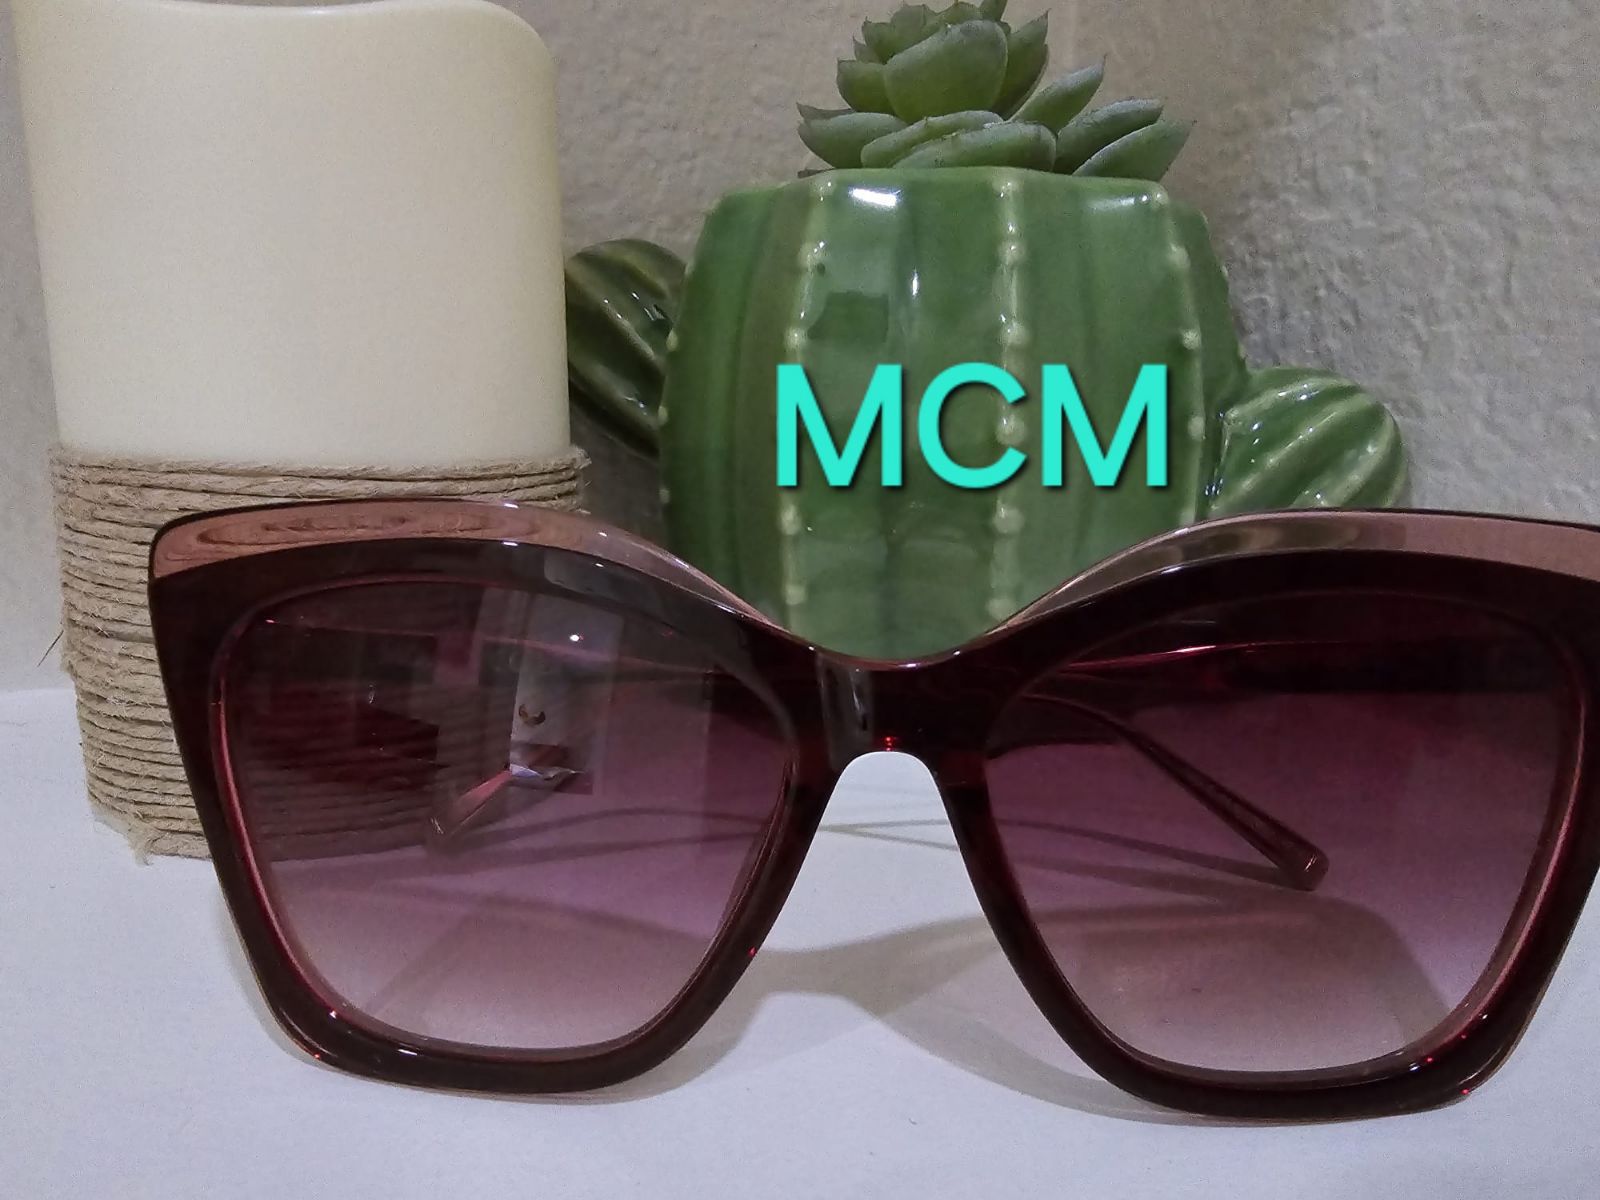 MCM glasses